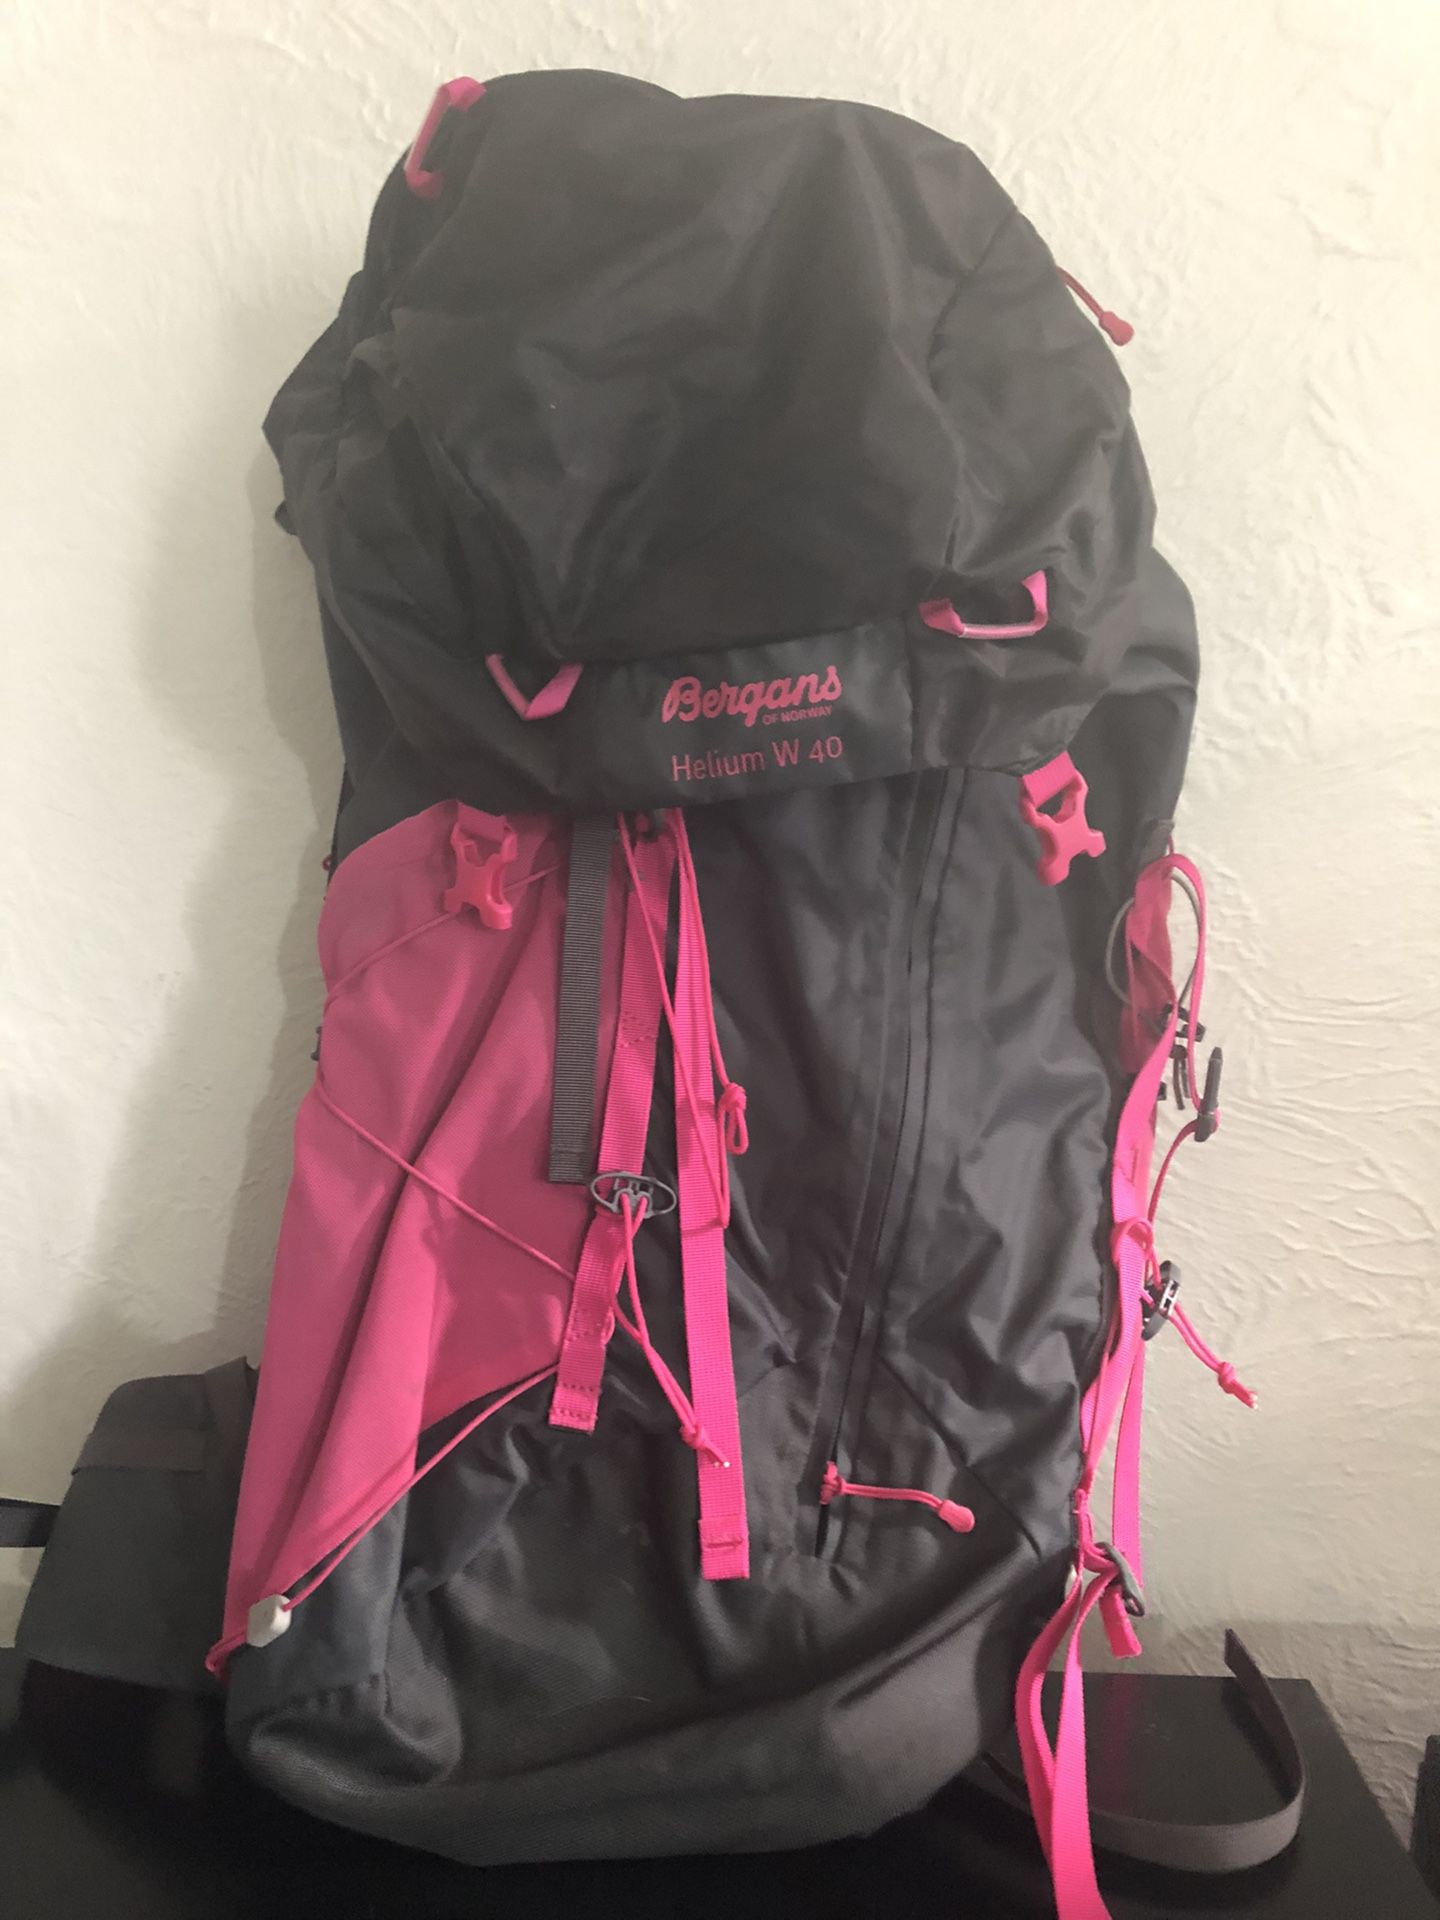 Bergans Helium W 40 hiking backpack